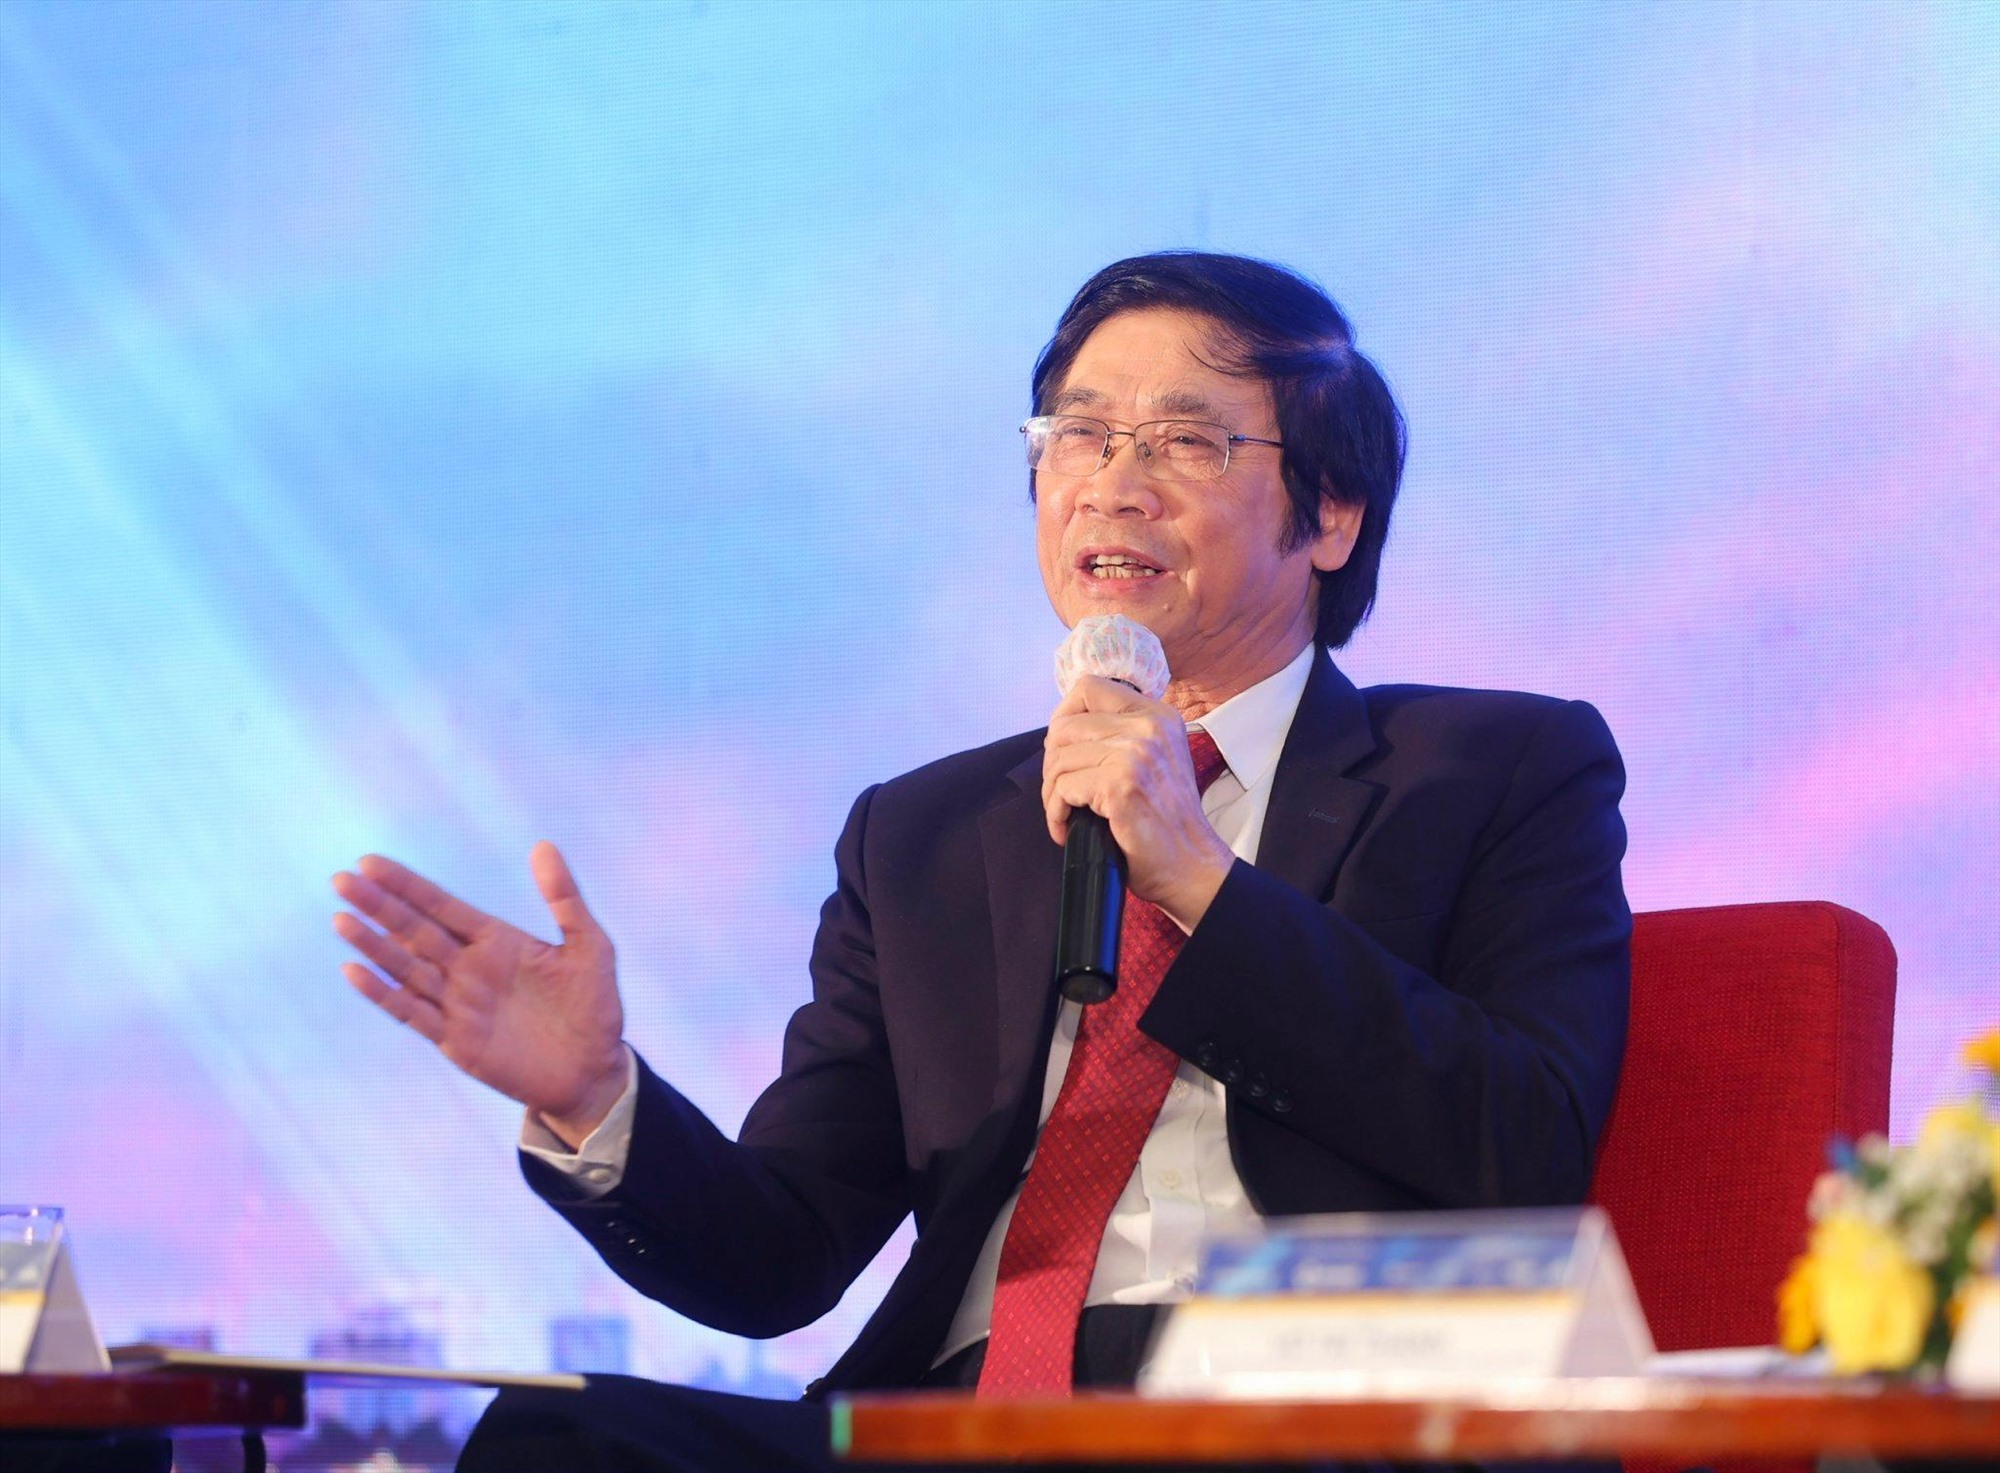 Chuyên gia kinh tế Võ Trí Thành cho rằng Đà Nẵng cần thu hút giới siêu giàu, nhân lực chất lượng cao đến sống và làm việc.